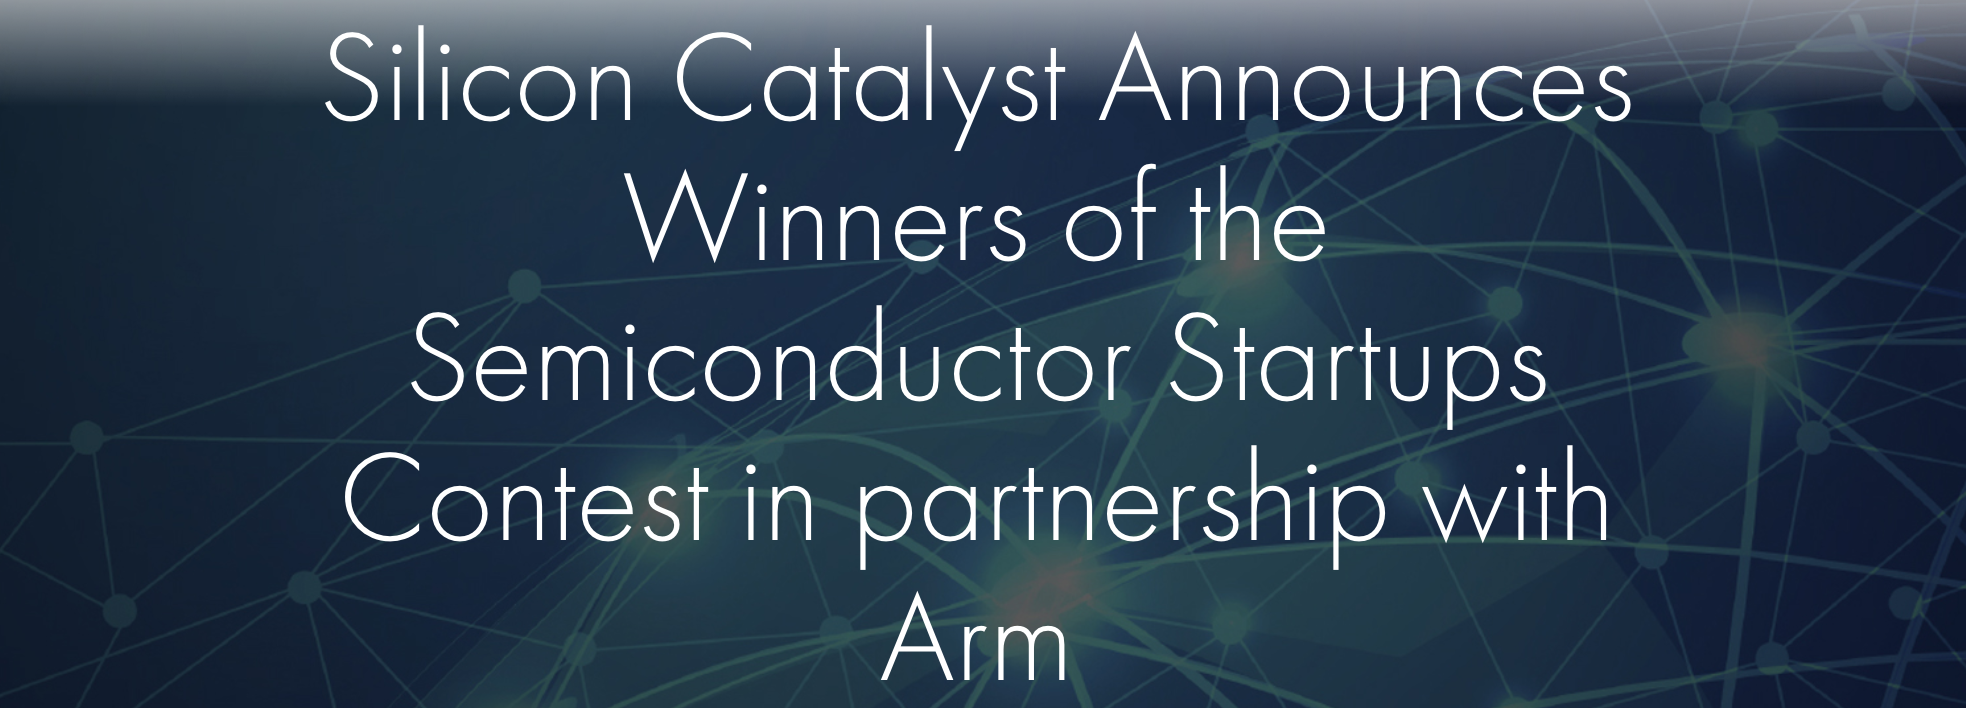 Et kig på vinderne af Silicon Catalyst/Arm Silicon Startups Contest - Semiwiki